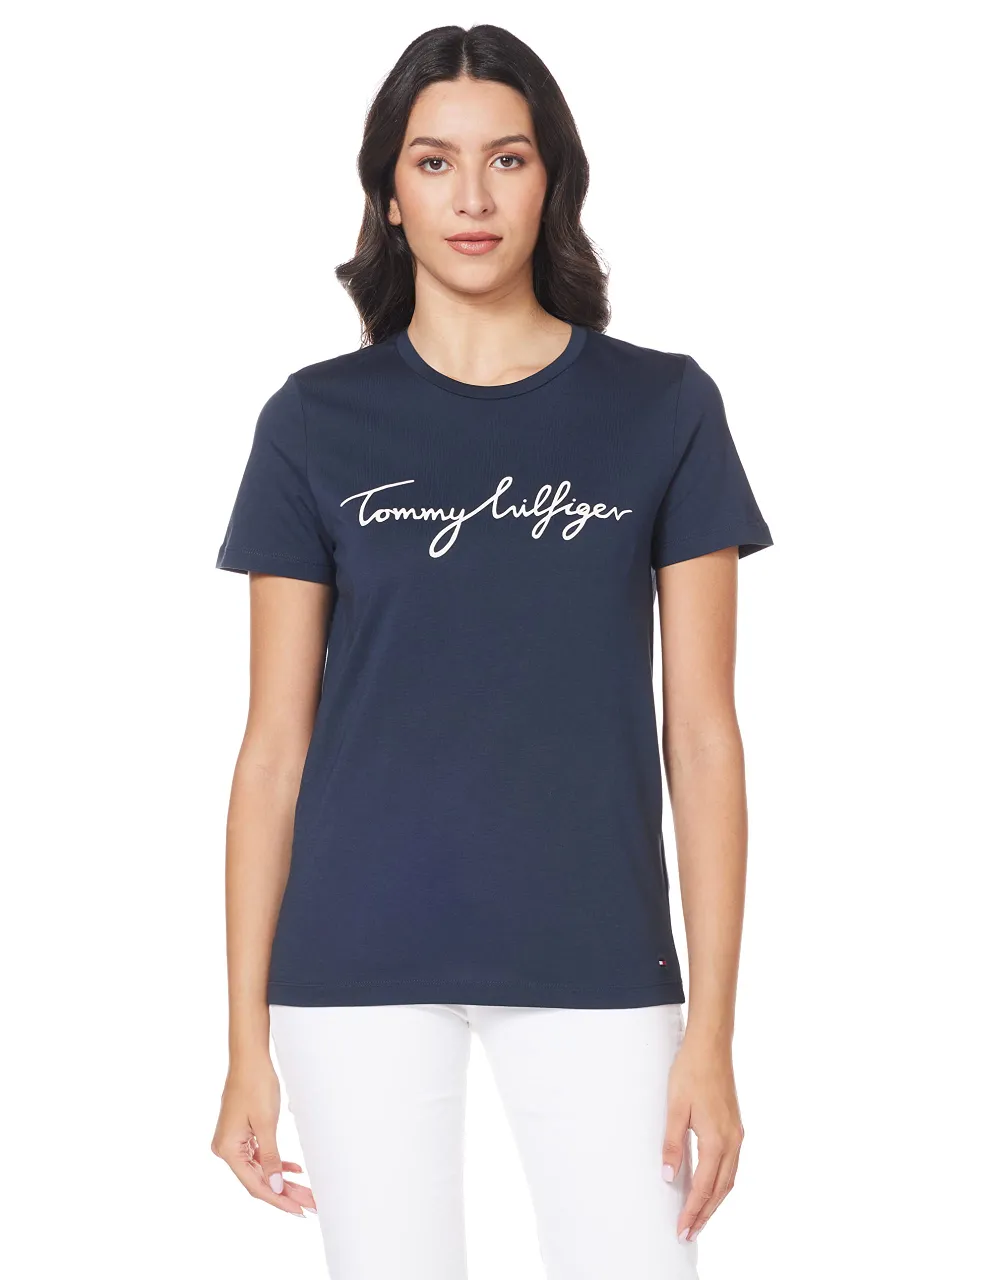 Tommy Hilfiger Damen T-Shirt Kurzarm Heritage 495089-0001-09900 - Preise  vergleichen